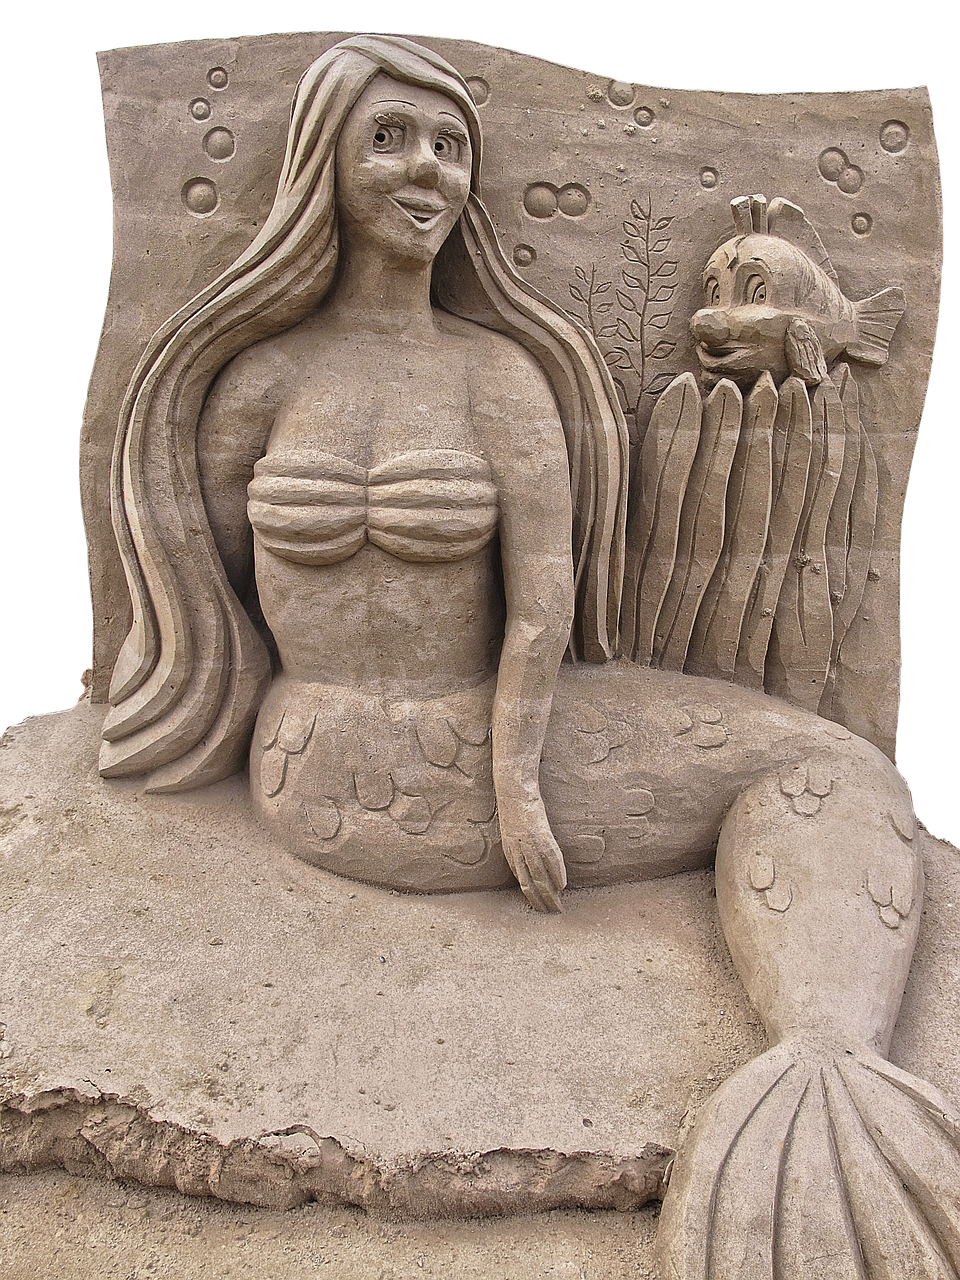 mermaid sand figure sculpture free photo